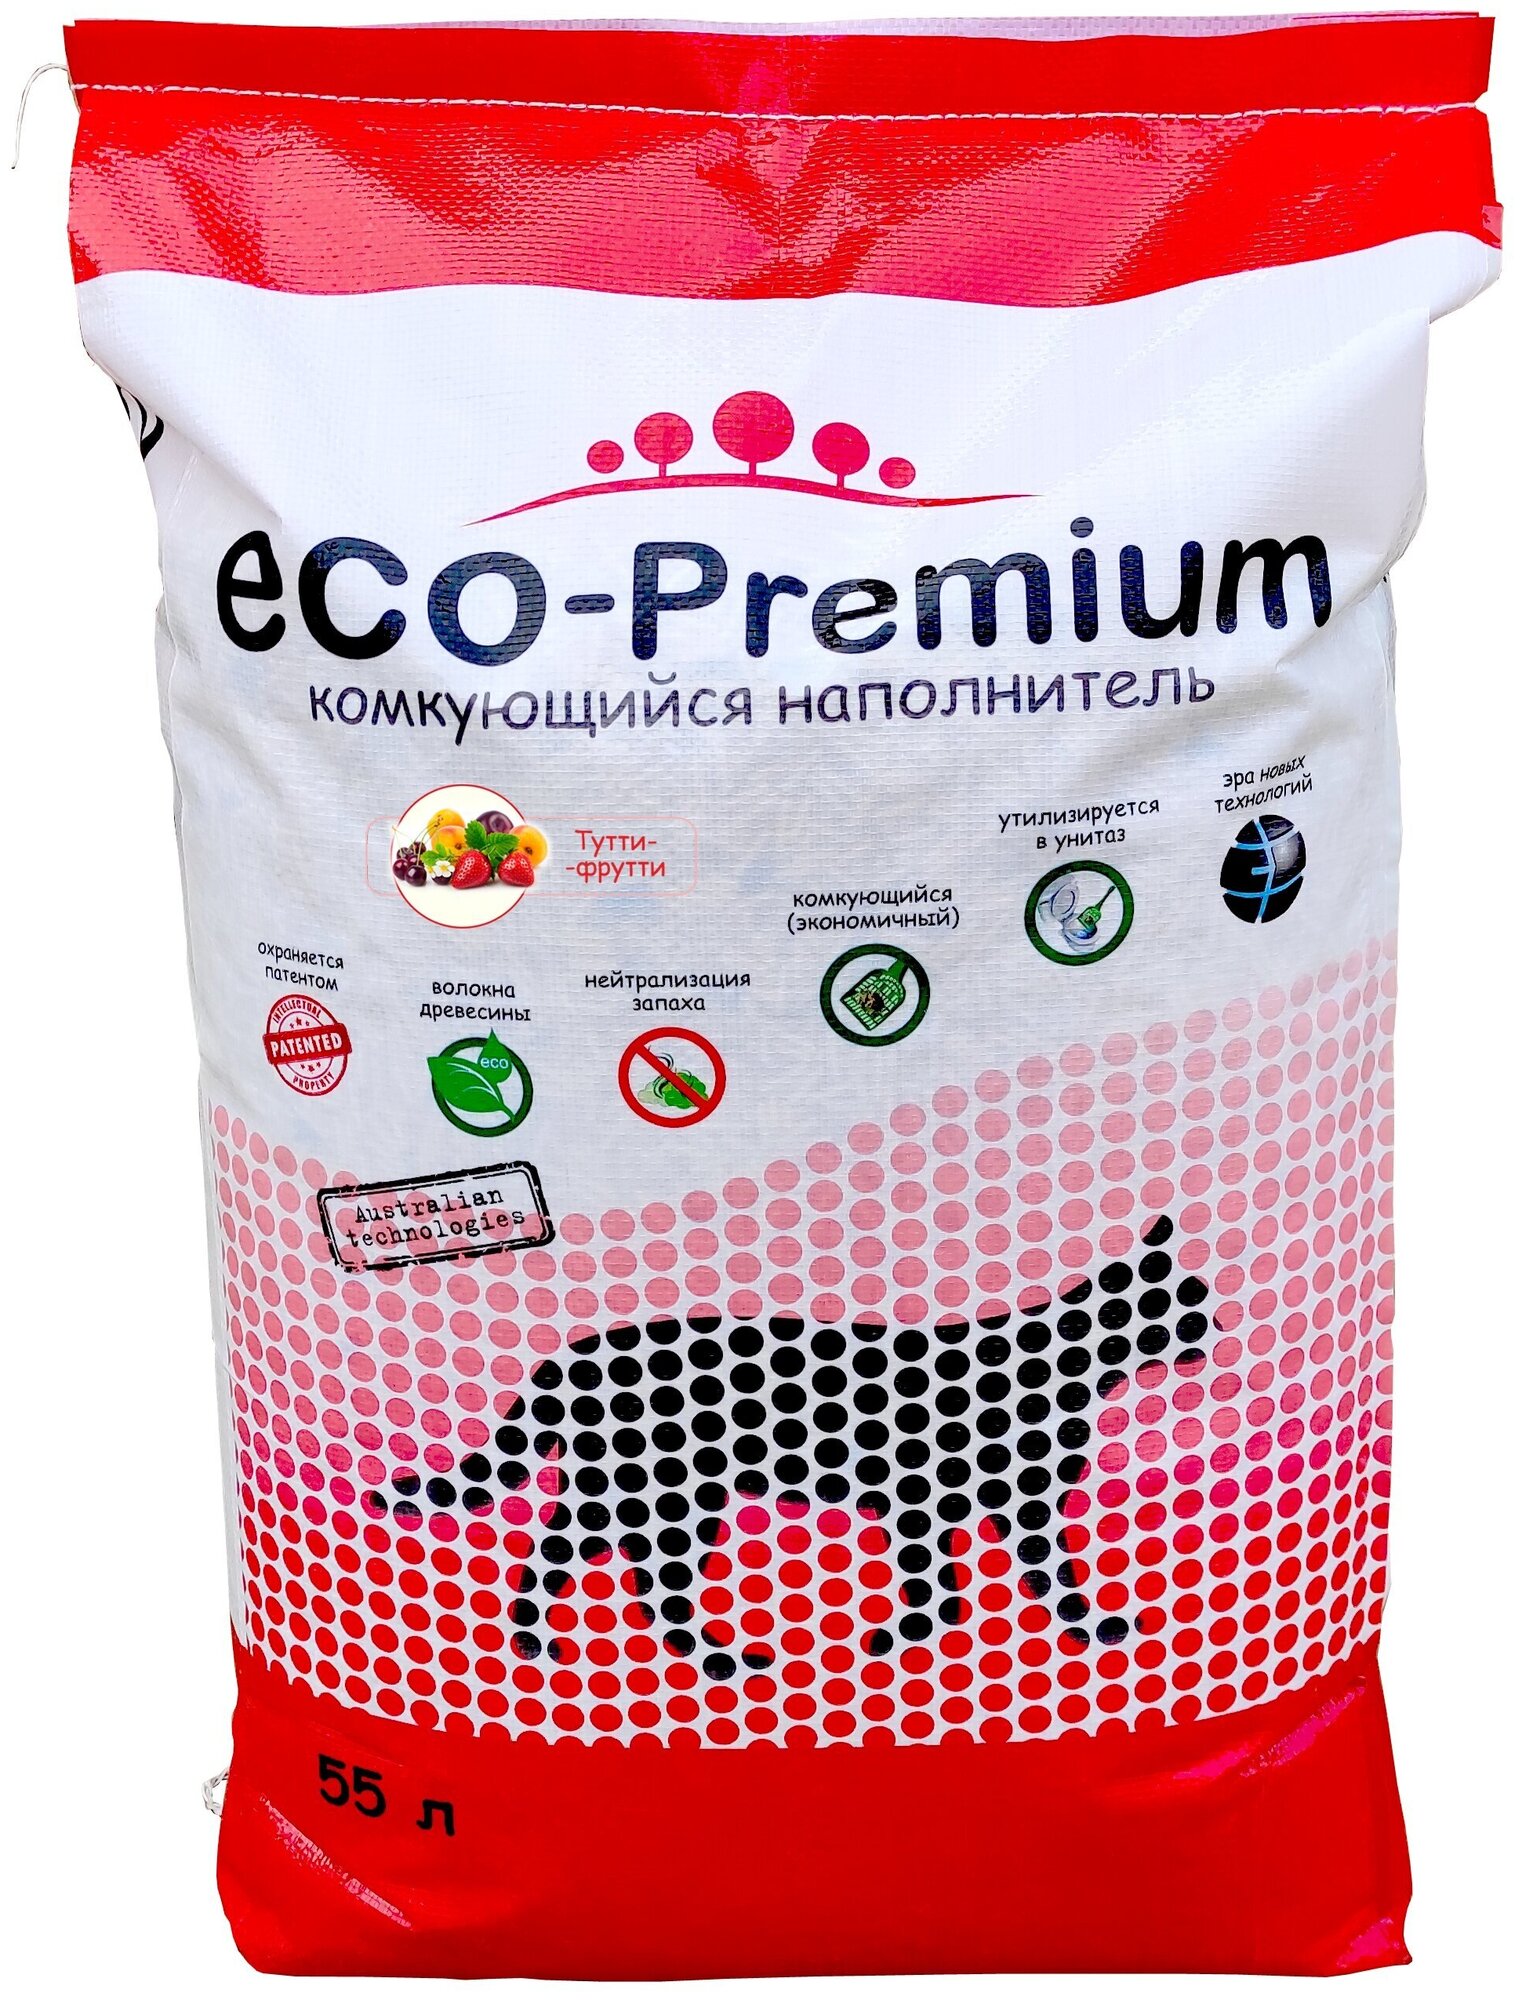 Наполнитель ECO Premium Тутти-фрутти комкующийся древесный 20.2кг/55л